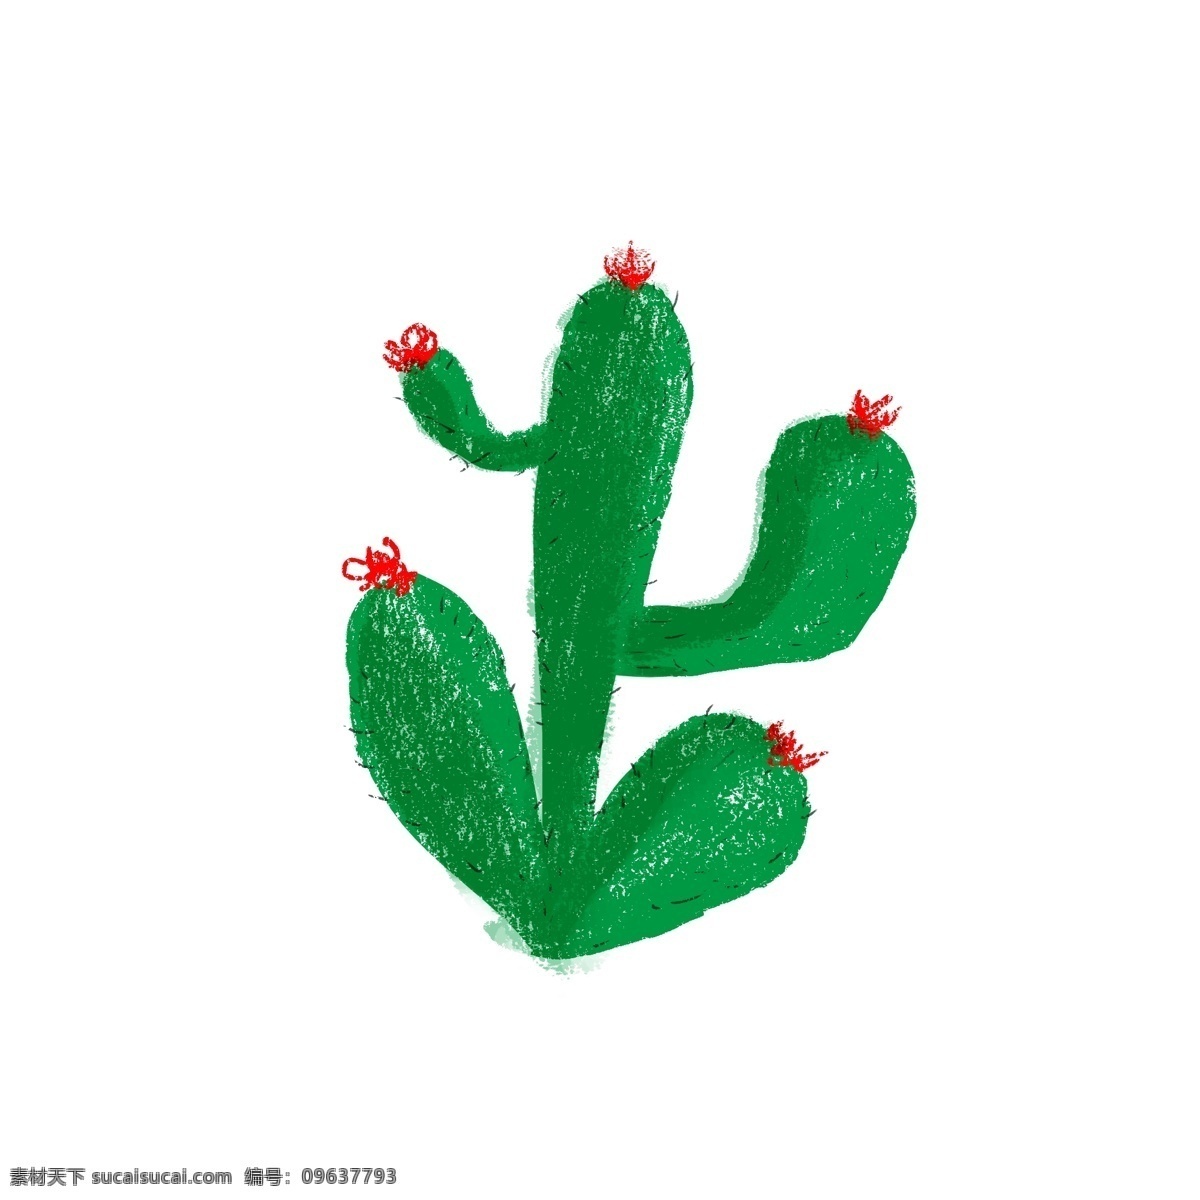 绿仙人掌 仙人掌 植物 绿色 卡通 可爱 简洁